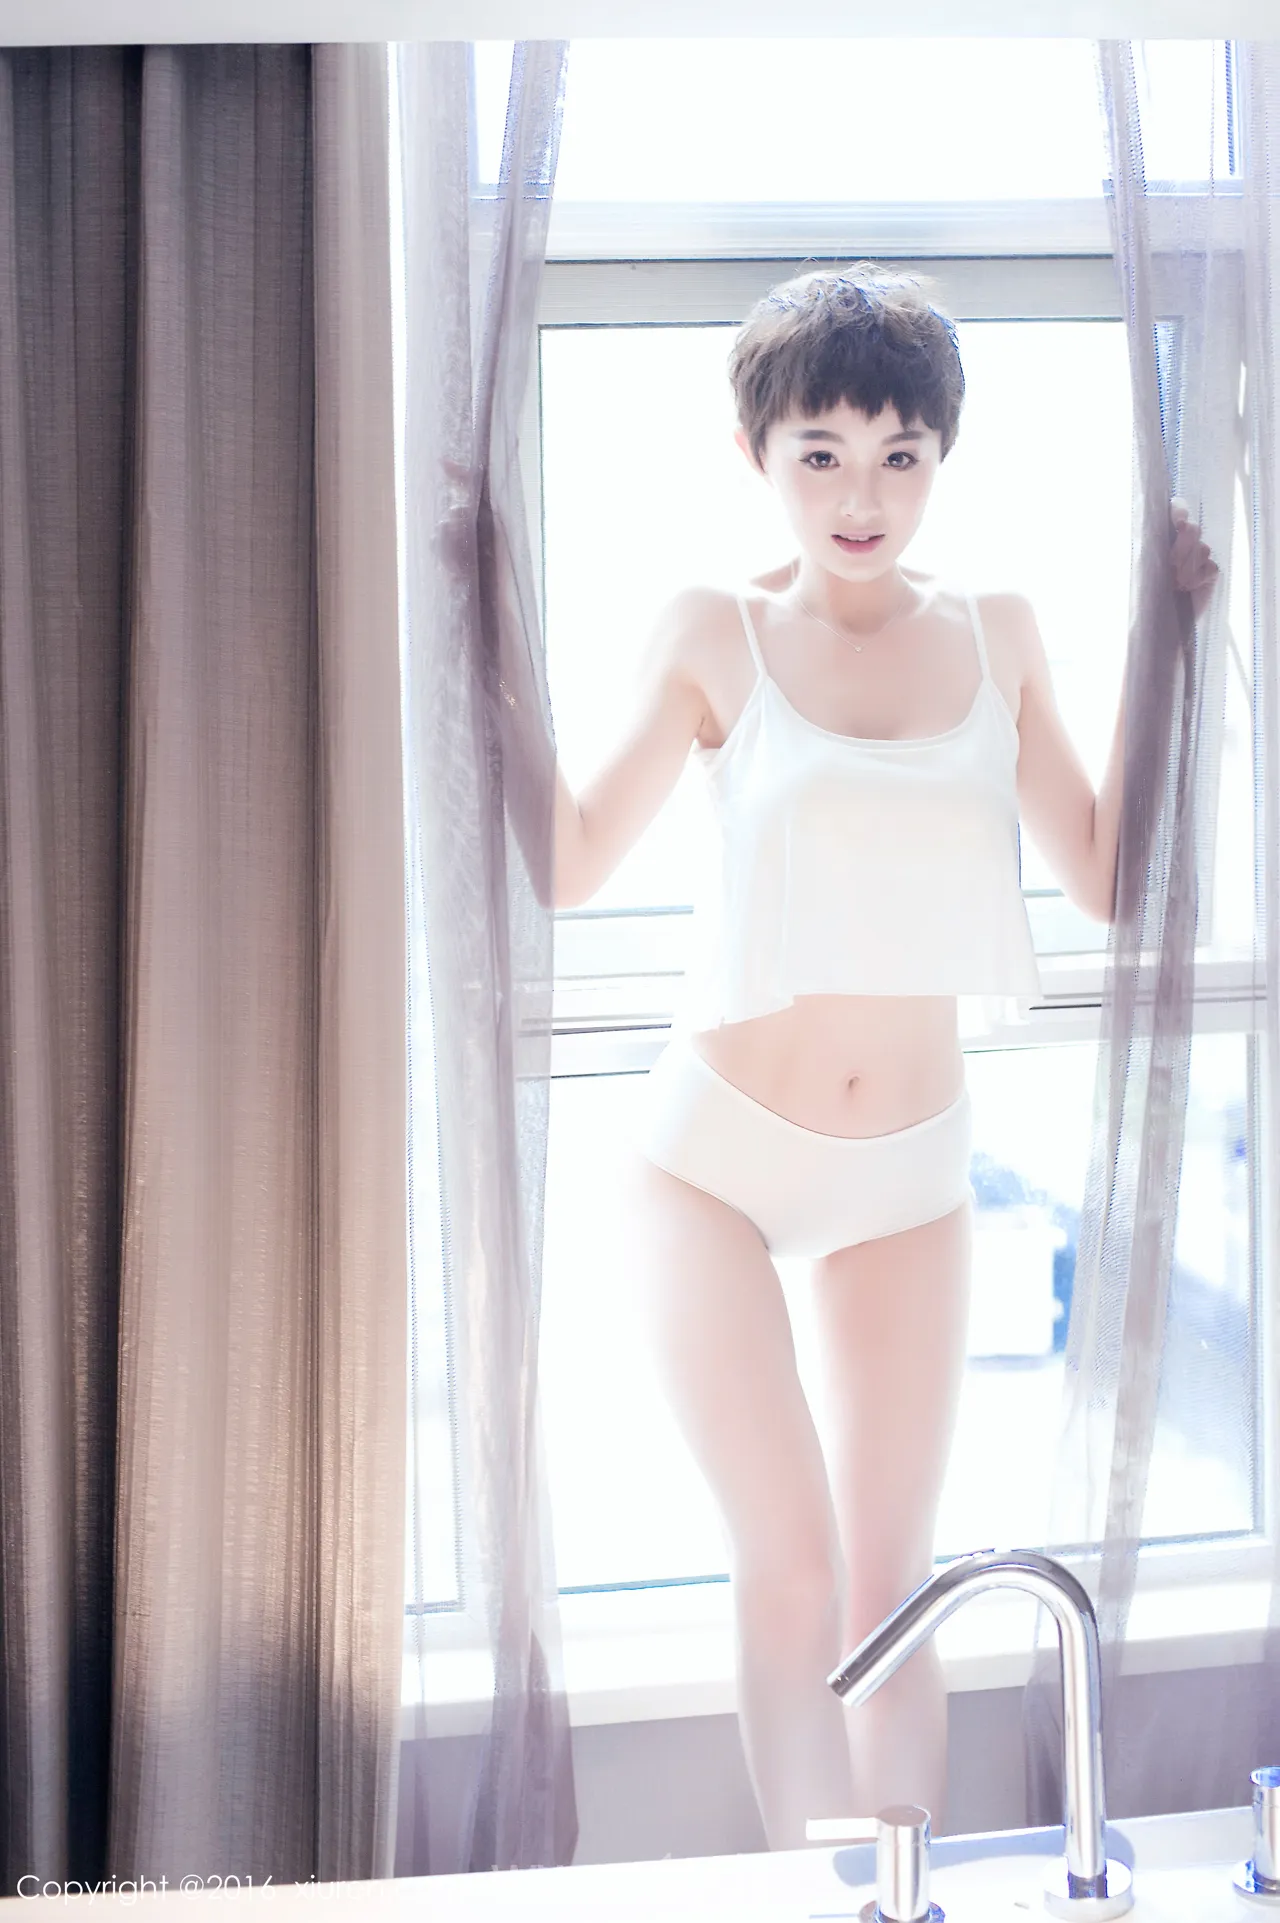 XIUREN(秀人网) NO.600 Elegant & Graceful Asian Women baby_kiki